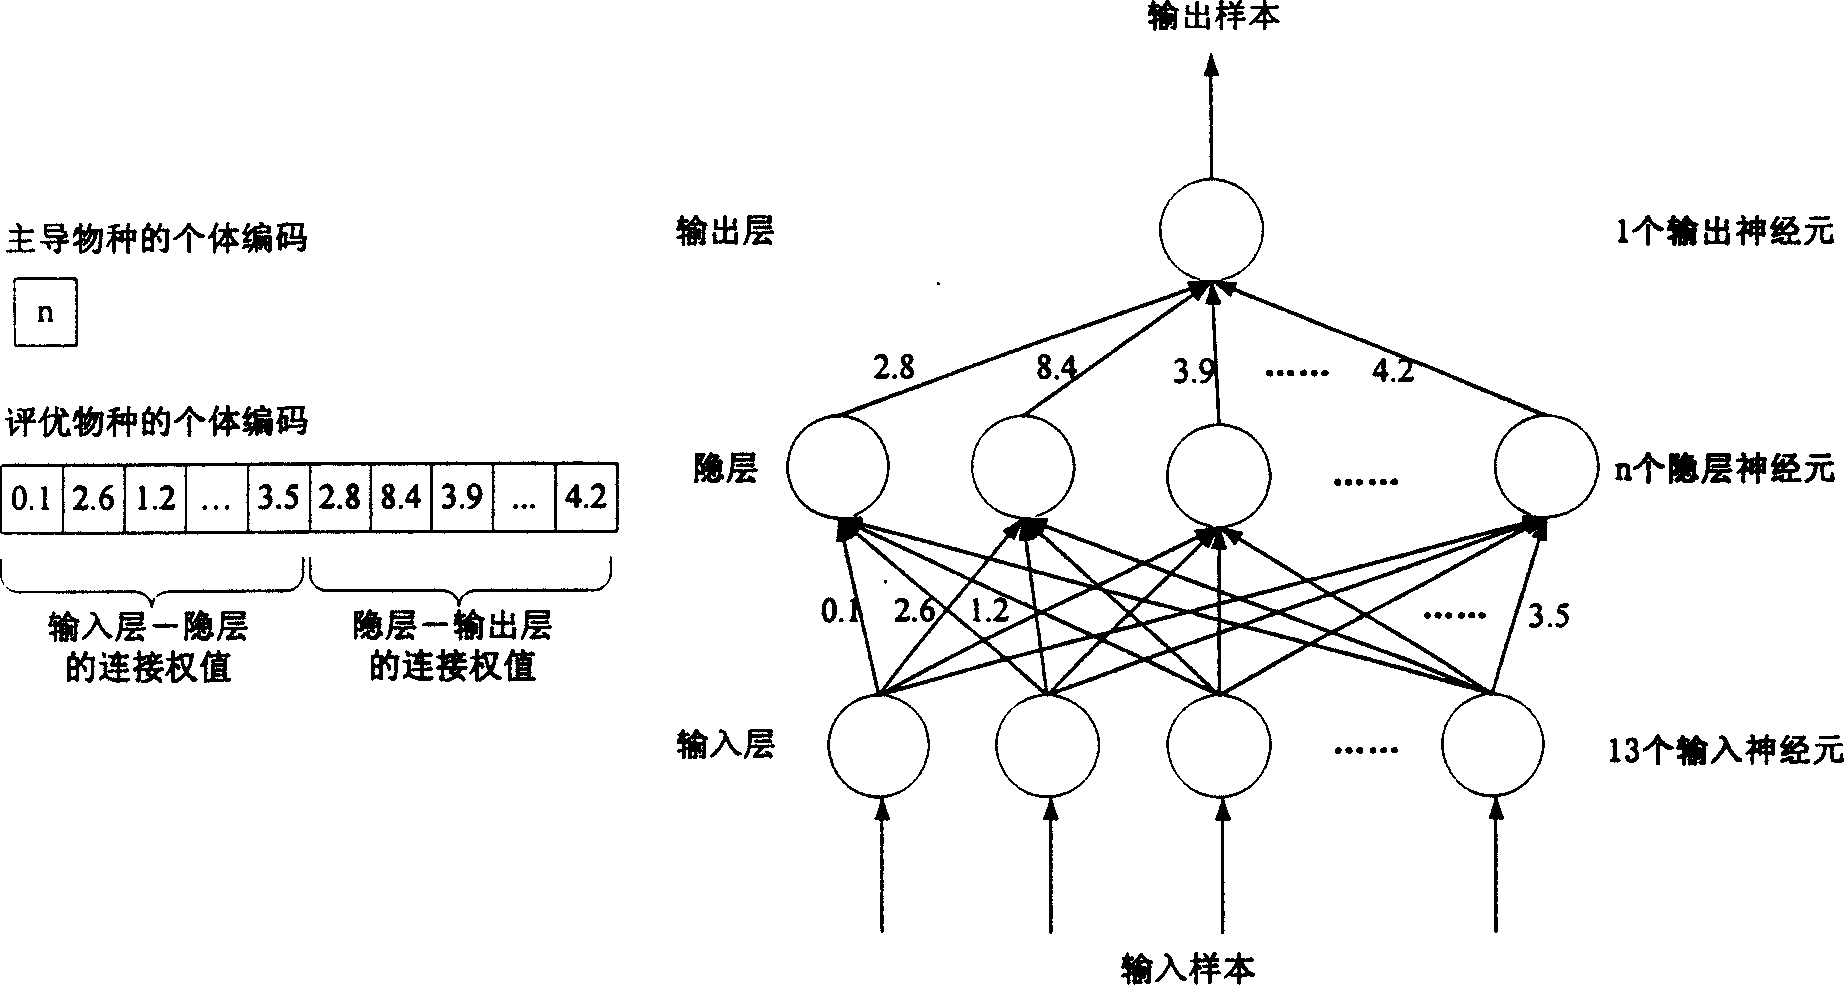 Neural network modelling method